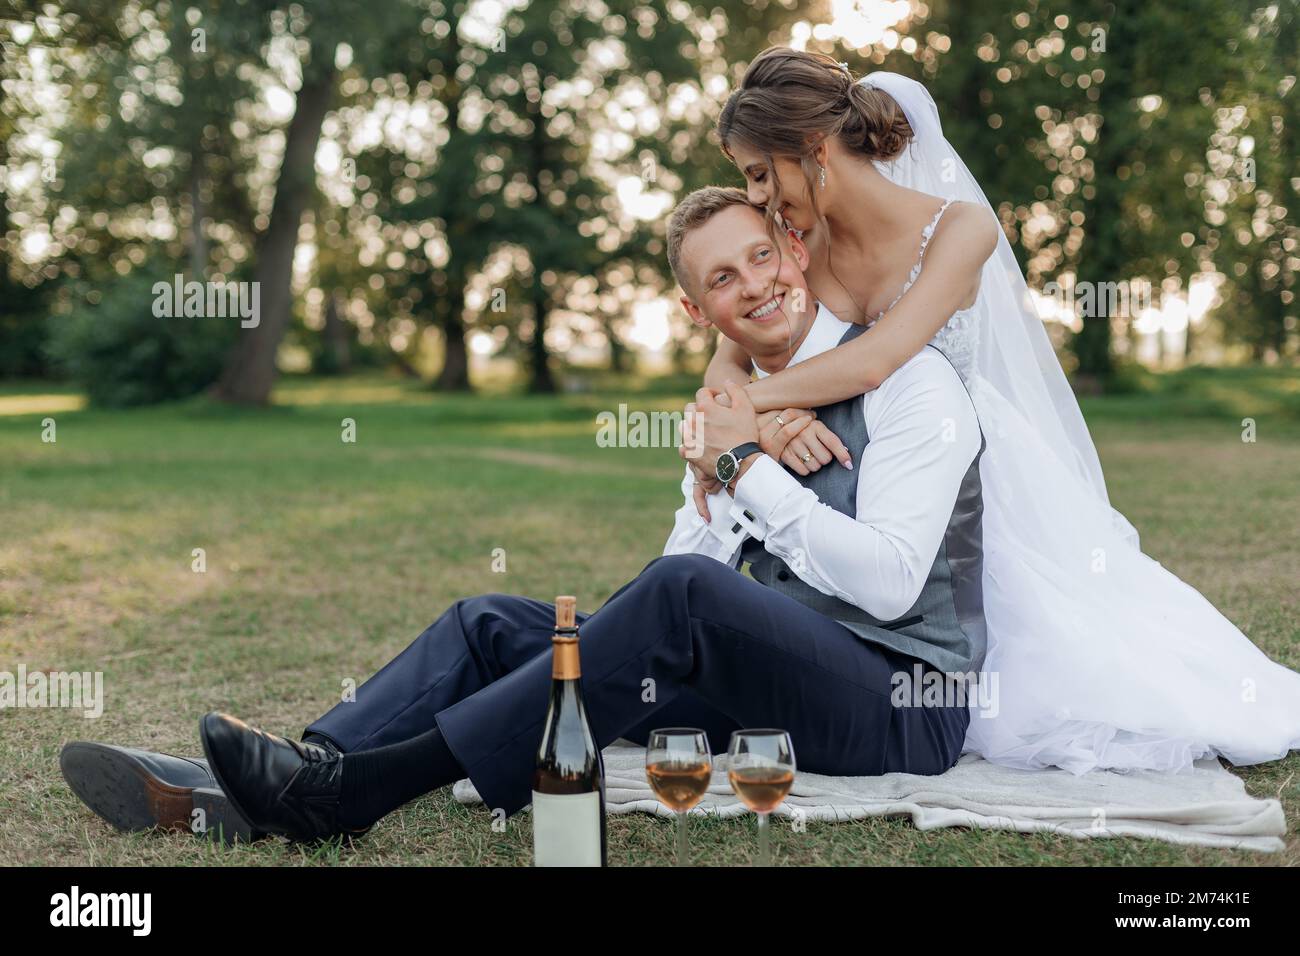 Vertikales frisch verheiratetes Brautpaar im Hochzeitskleid, küsst den Bräutigam, umarmt und trinkt Champagner am Hochzeitstag Stockfoto